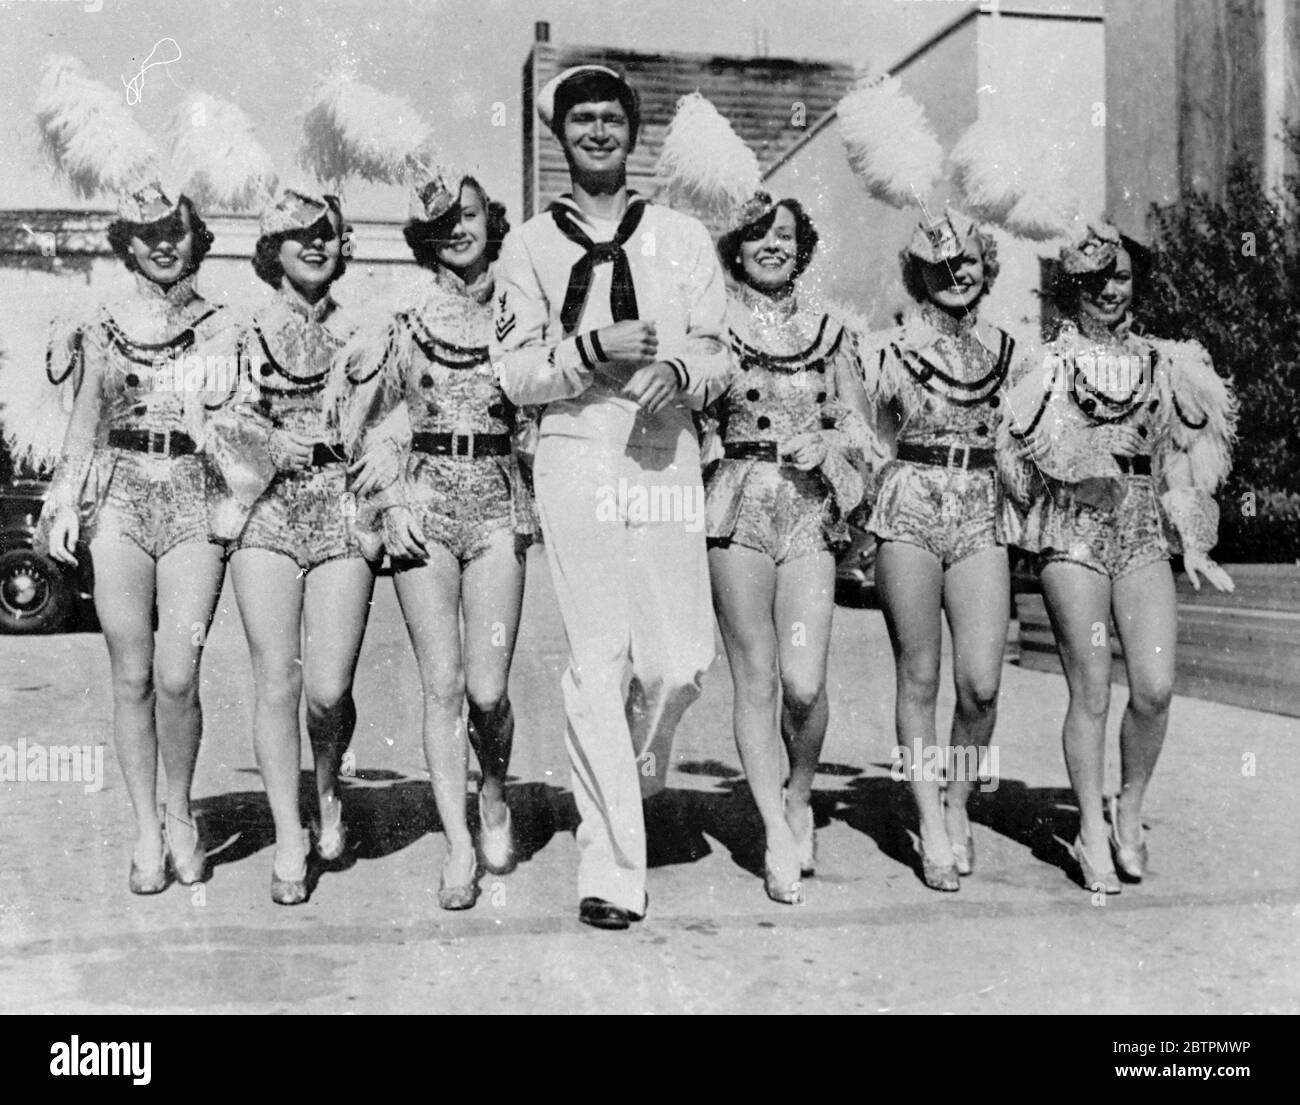 Sie rufen alle Sterne! Foto zeigt: Ein Traum der Matrosen wurde wahr - aber es geschah in Hollywood! Der Seemann ist Tänzer (keine weiteren Details verfügbar) 22. Oktober 1936 Stockfoto